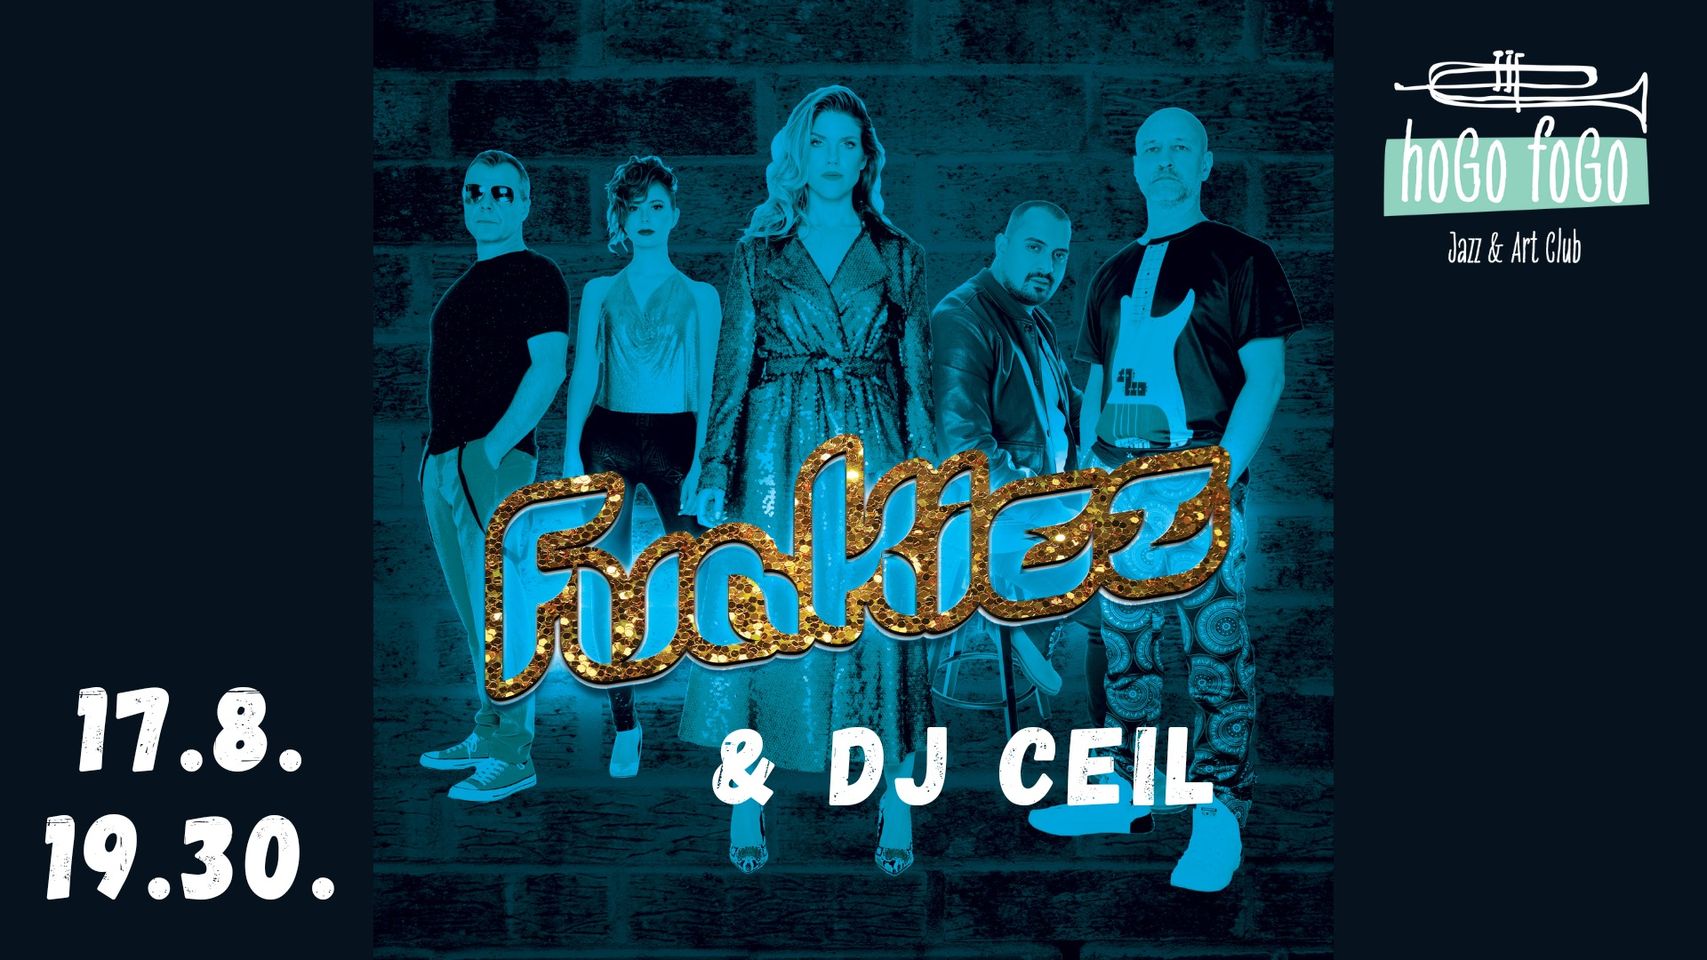 FUNKIEZ plus DJ Ceil - besná Funky Party Hogo Fogo Jazz & Art Club